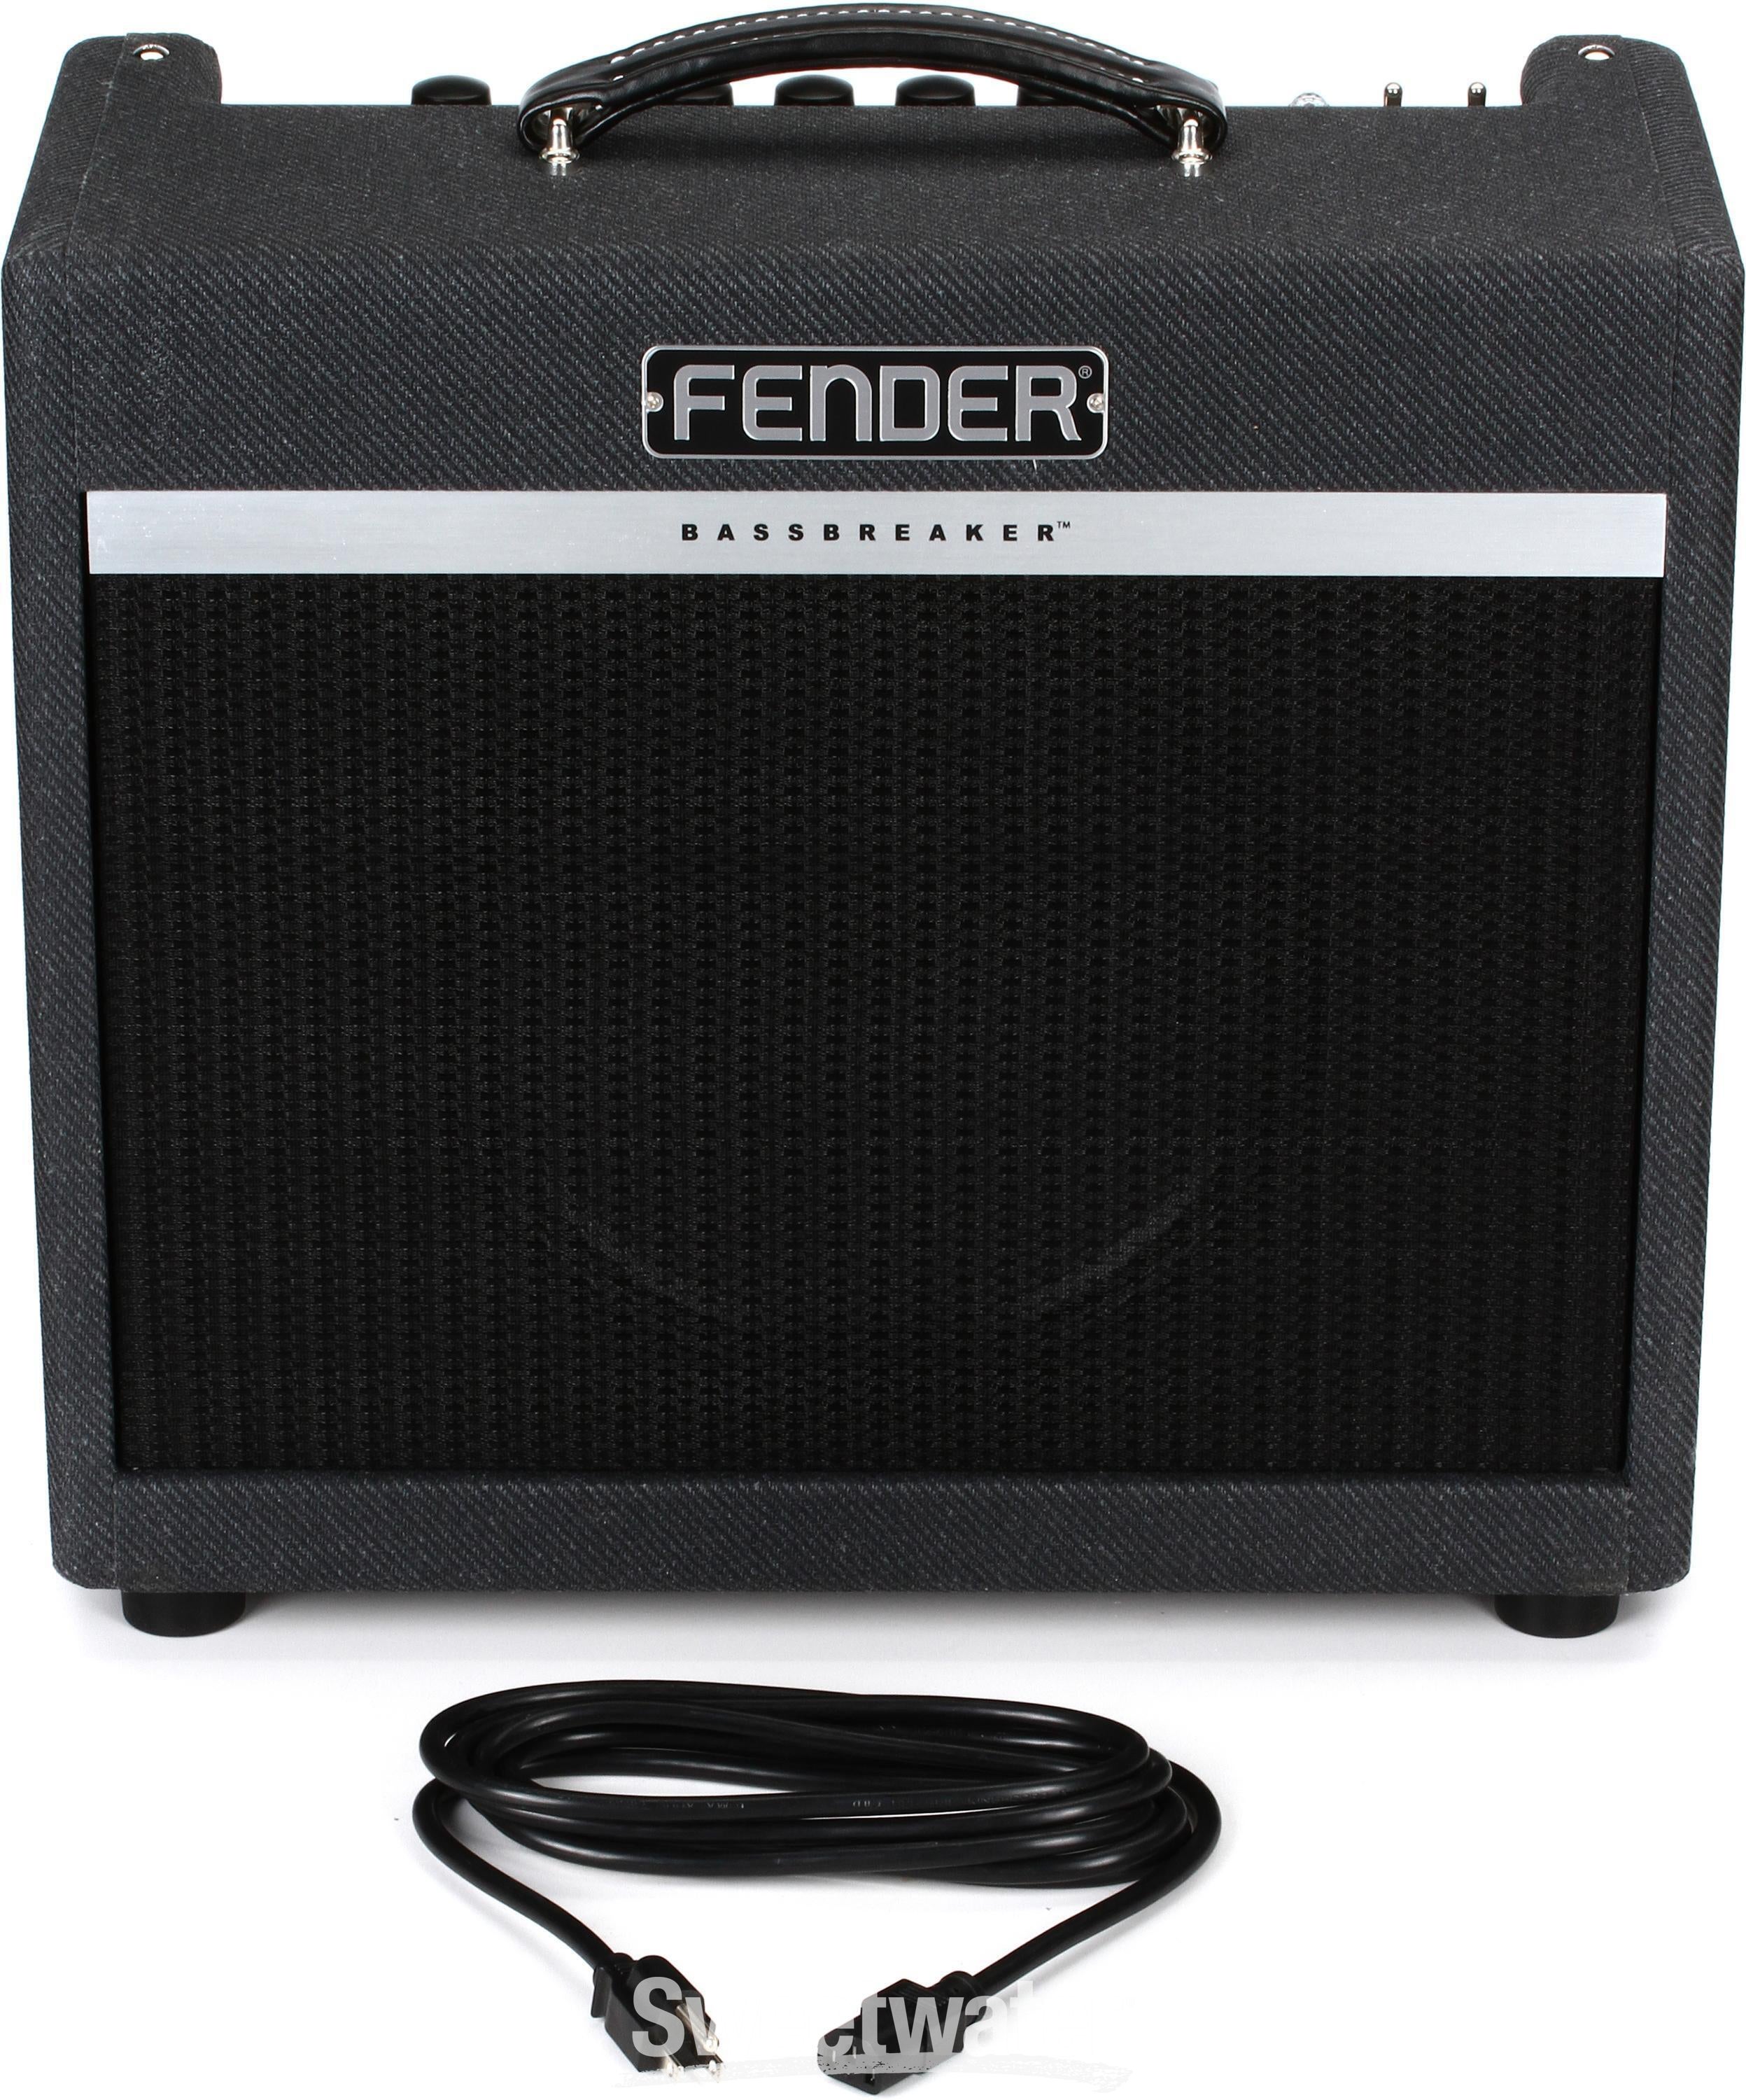 Fender Bassbreaker 15 1x12